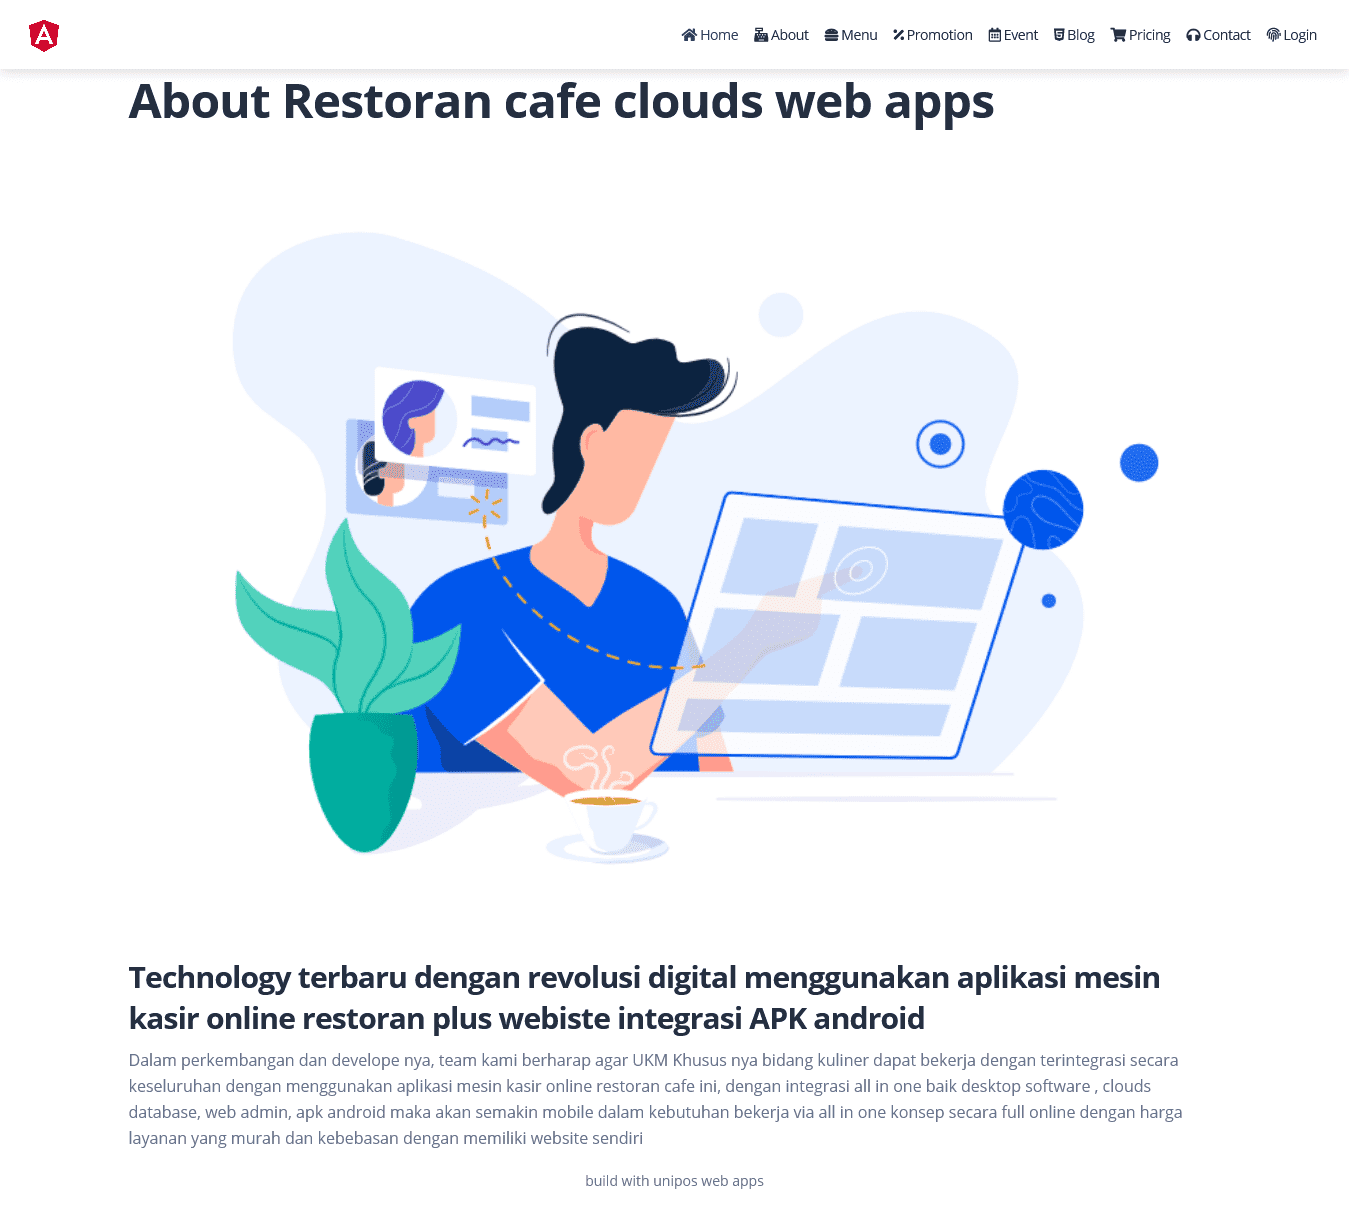 aplikasi restoran cafe rumah makan website restoran cafe rumah makan toko online shop apk android restoran cafe rumah makan